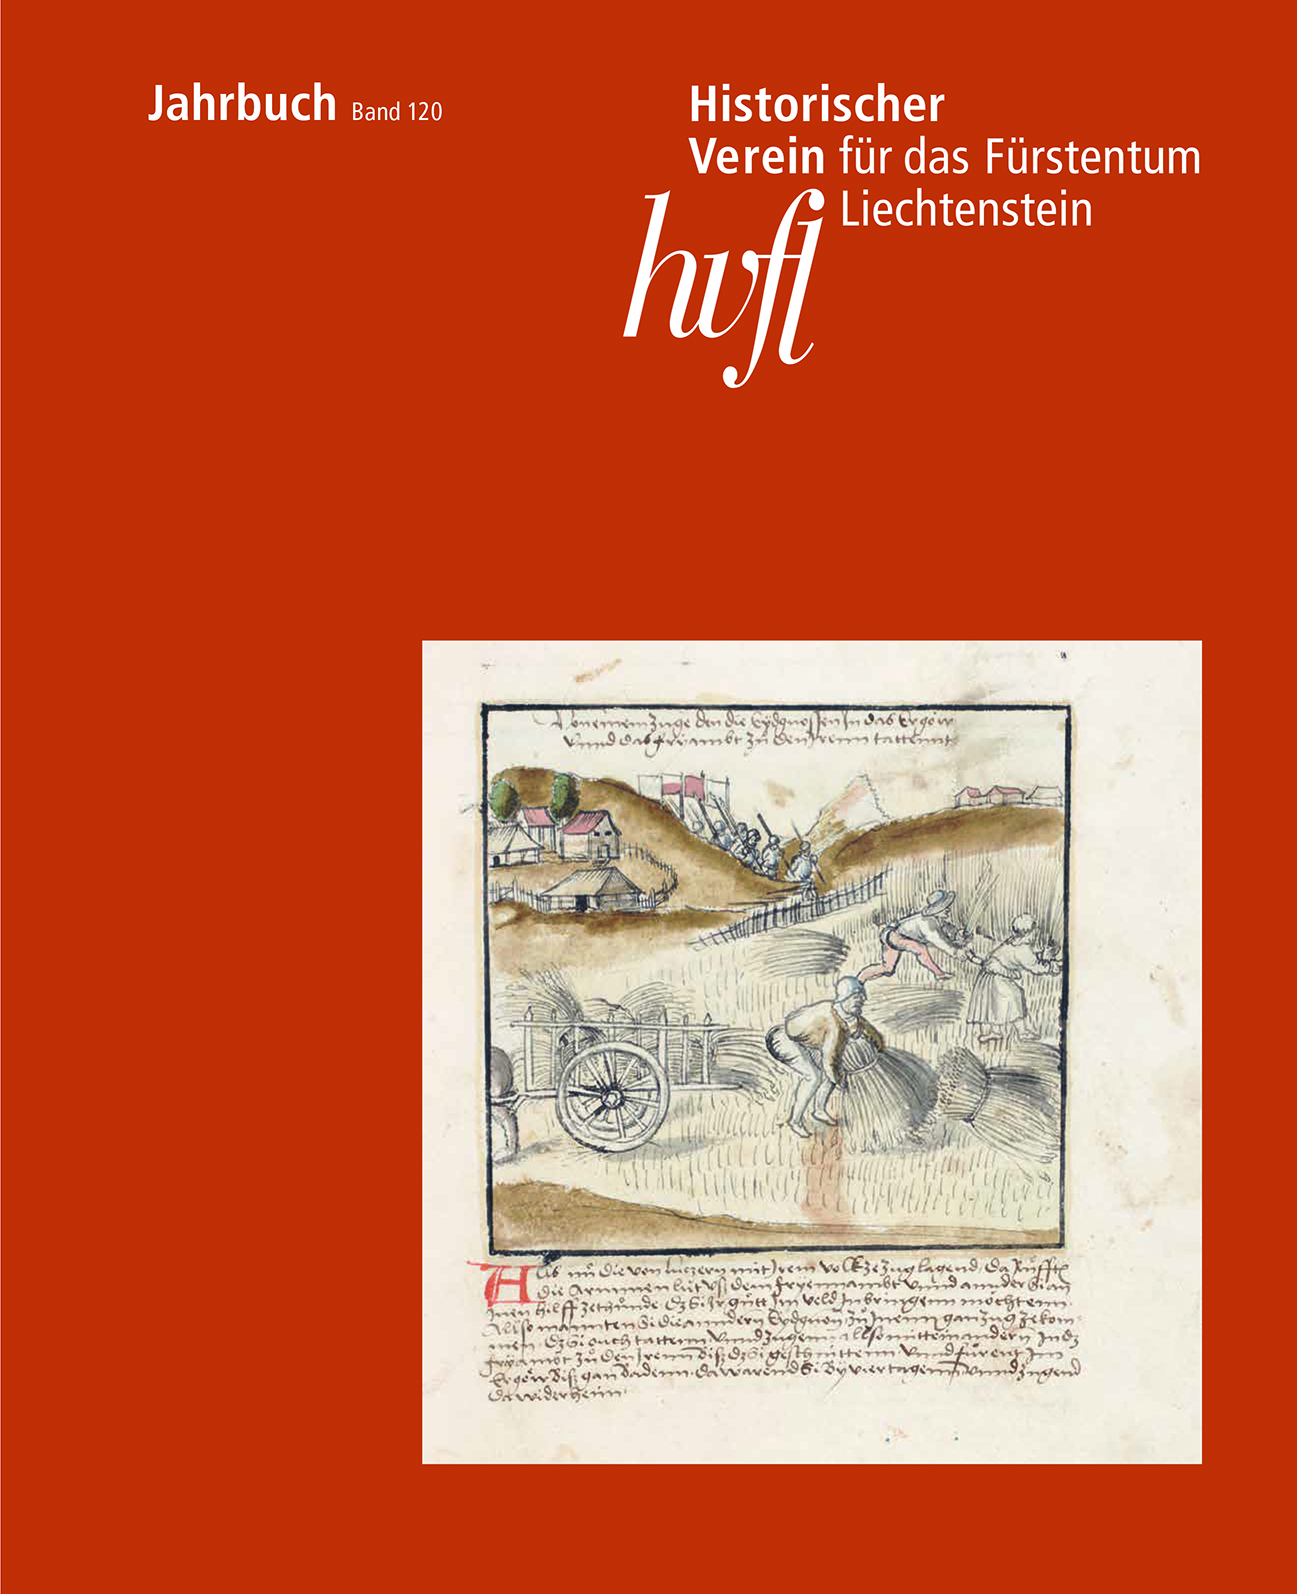 2021, 26. August - Jahrbuchpräsentation, Band 120